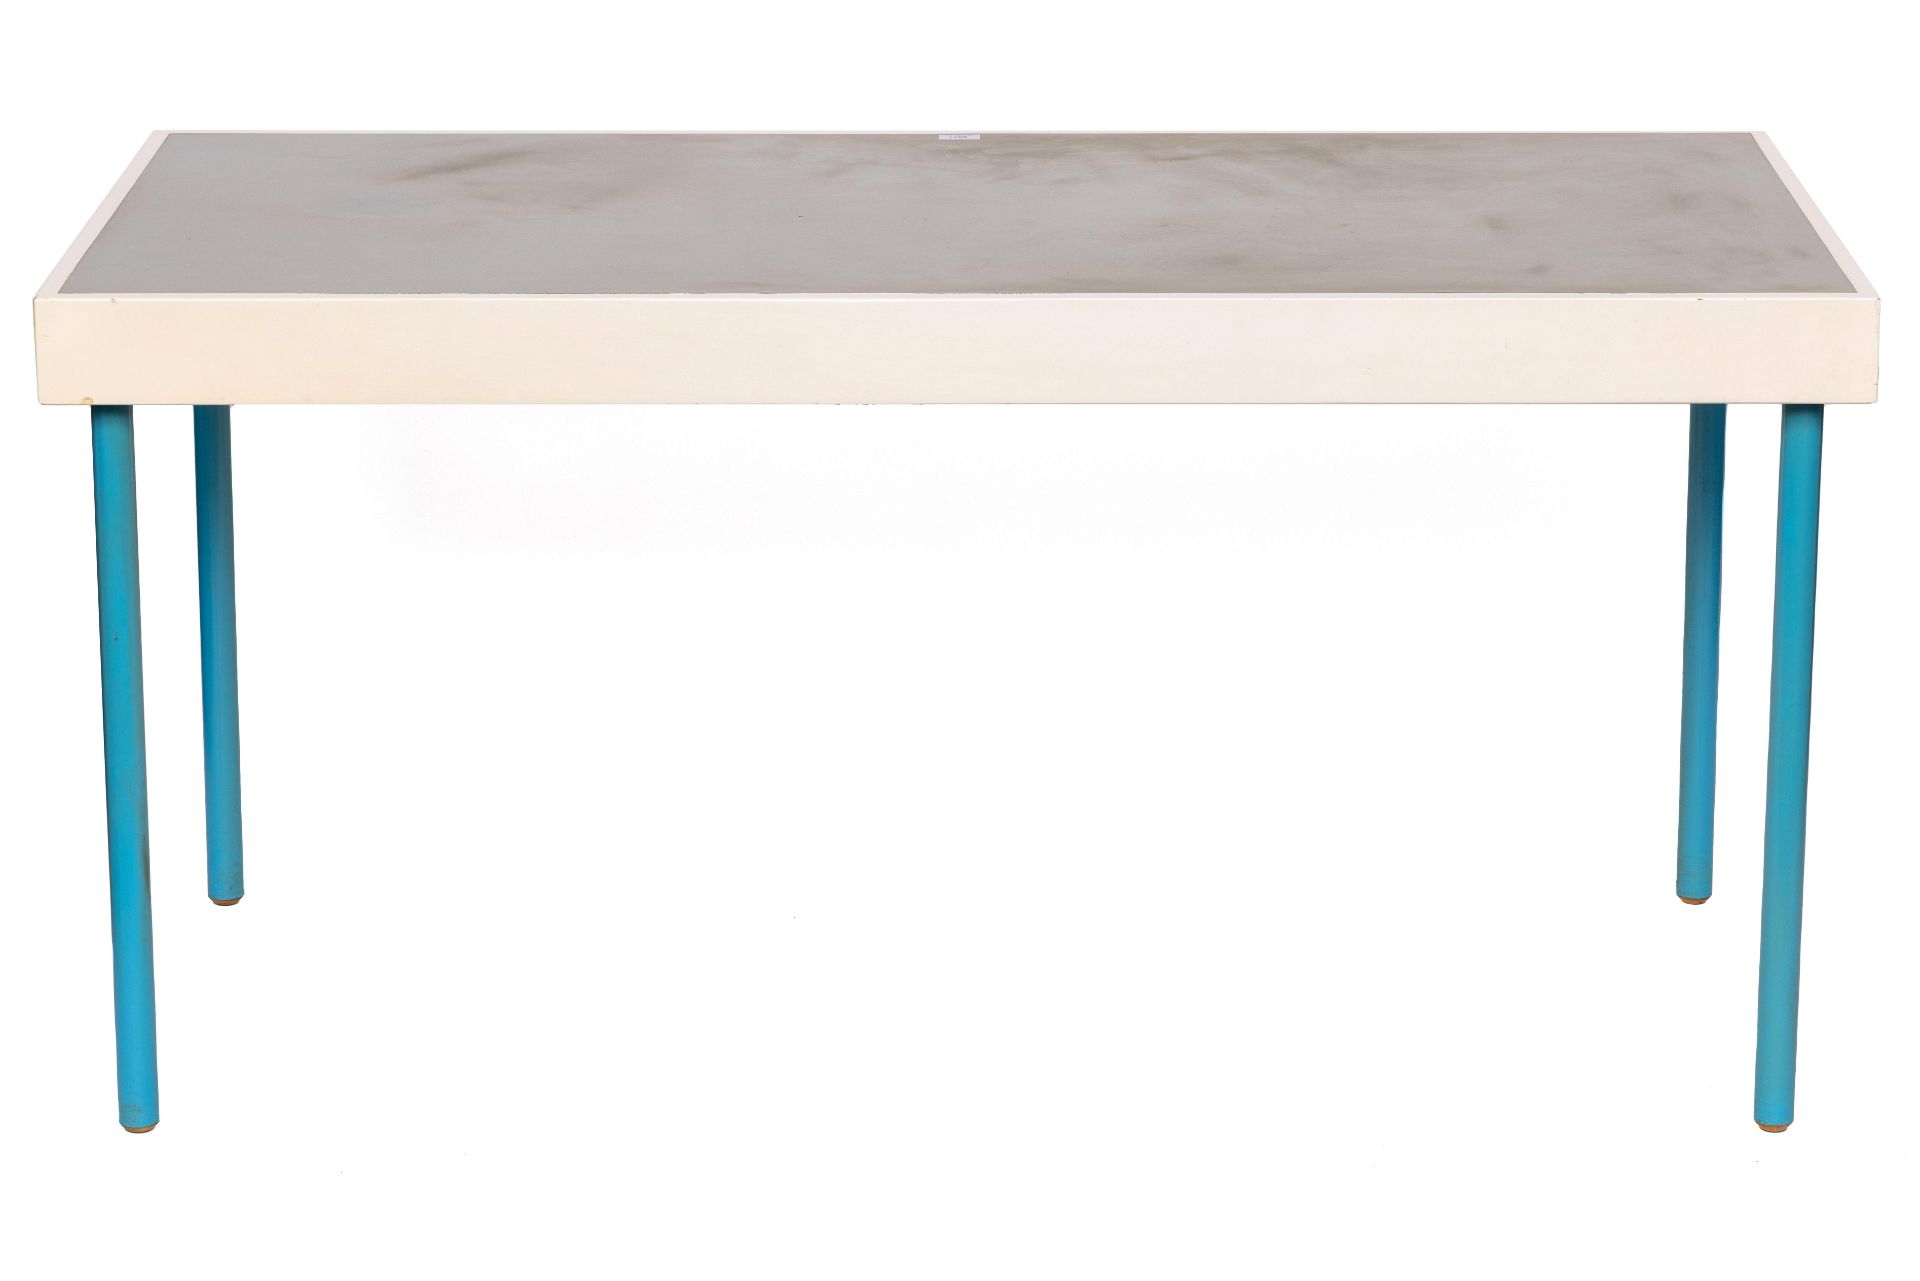 Jacobus Johannes Pieter Oud (1890-1963), wit gelakt houten tafel, ontwerp 1929,